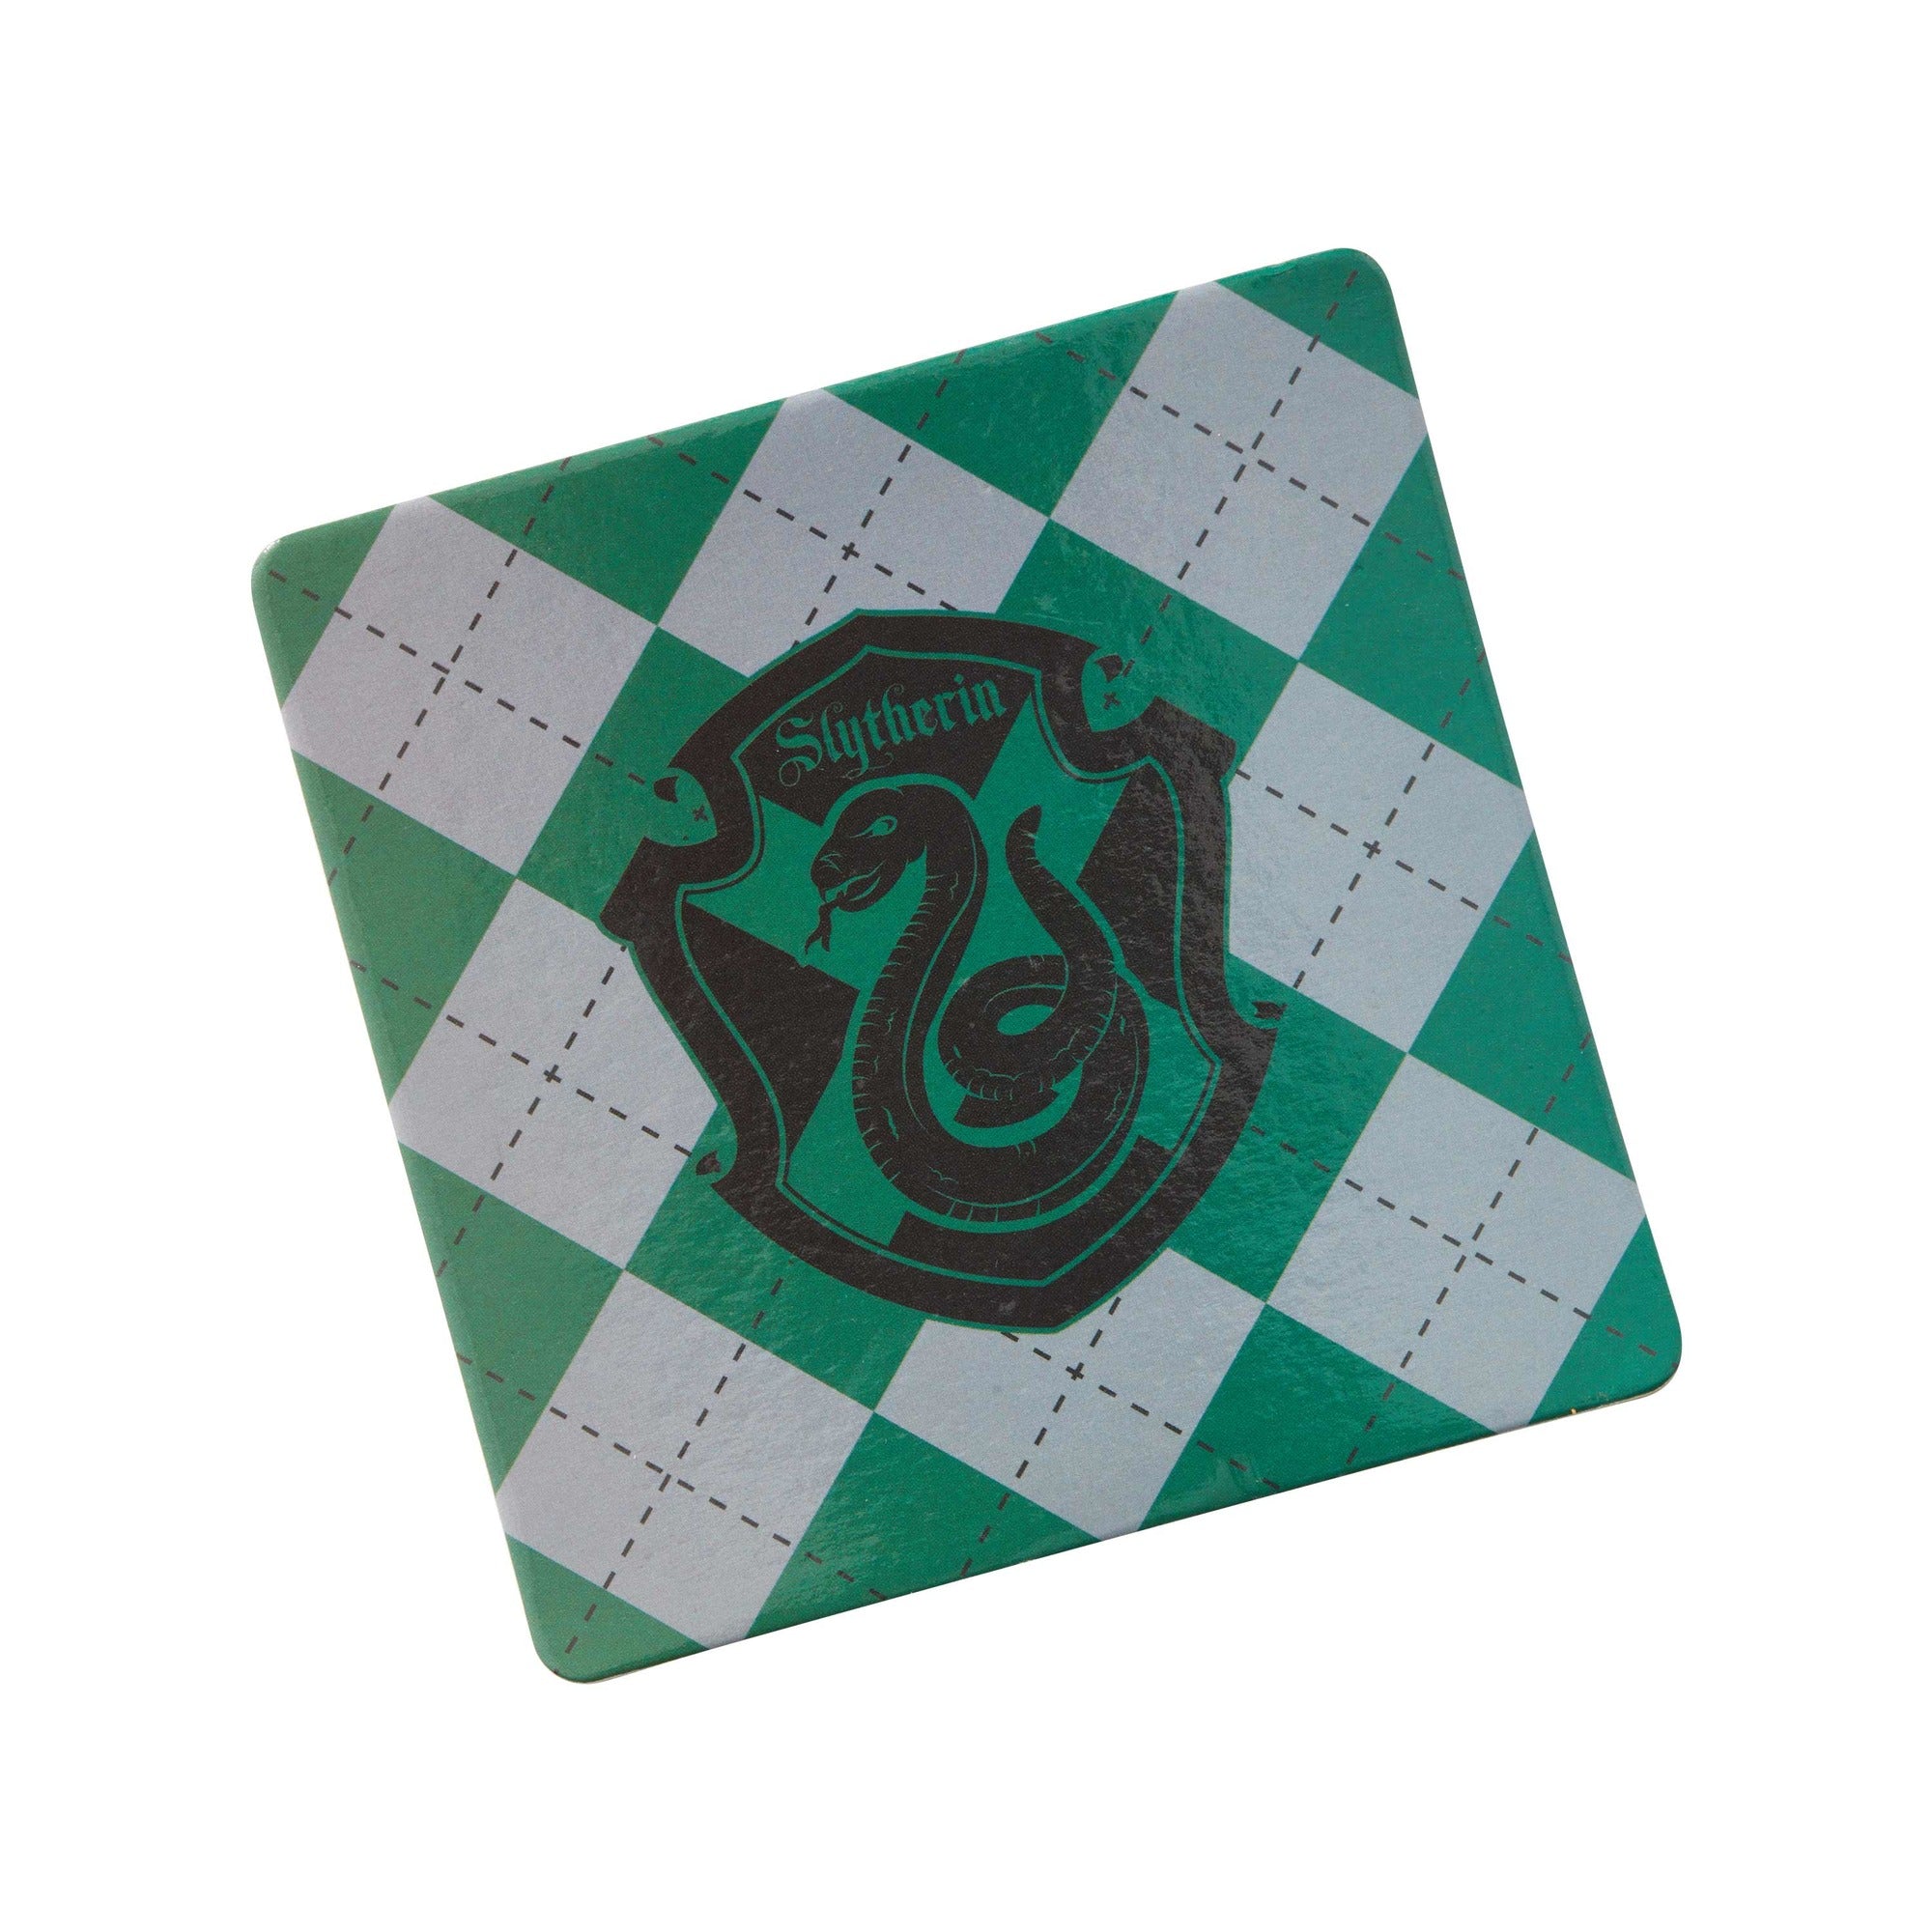 Slytherin House emblem Harry Potter Magnet - Sunnyside Gift Shop